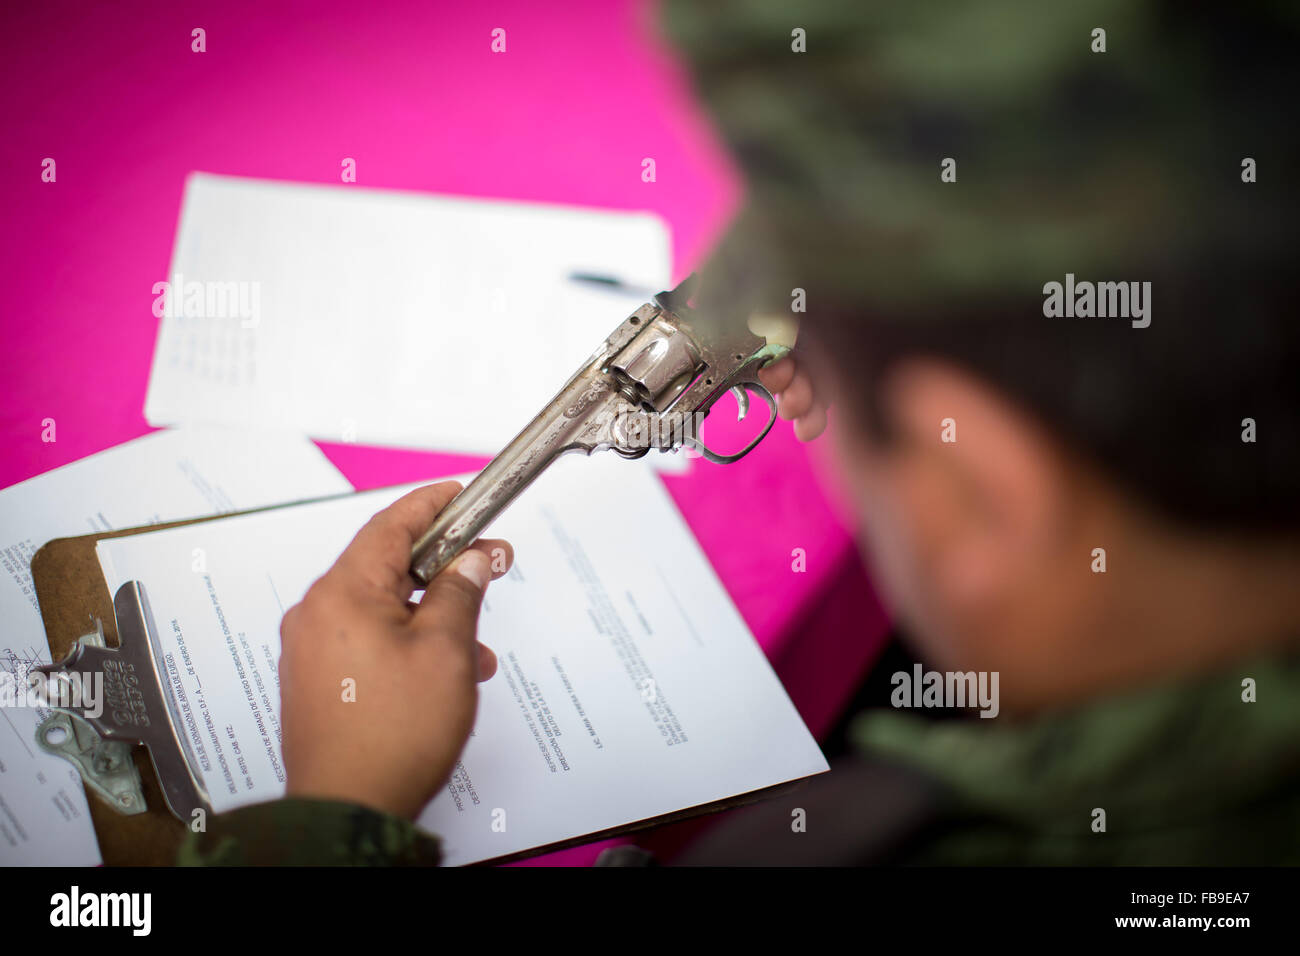 (160112) -- CITTÀ DEL MESSICO, Gennaio 12, 2016 (Xinhua) -- Un uomo militare classifica un arma durante la sesta tappa del programma " Per la vostra famiglia, disarmo volontario', alla Cattedrale Metropolitana, a Città del Messico, capitale del Messico, a gennaio 12, 2016. Secondo la stampa locale il governo del Distretto Federale (GDF, per il suo acronimo in spagnolo), effettuata la sesta fase di scambio di armi attraverso il programma "Per la vostra famiglia, disarmo volontario', in cui le persone possono scambiare armi e pistole giocattolo per denaro, disposizioni e dispositivi elettronici. Le armi scambiati sono esaminati dai membri Foto Stock